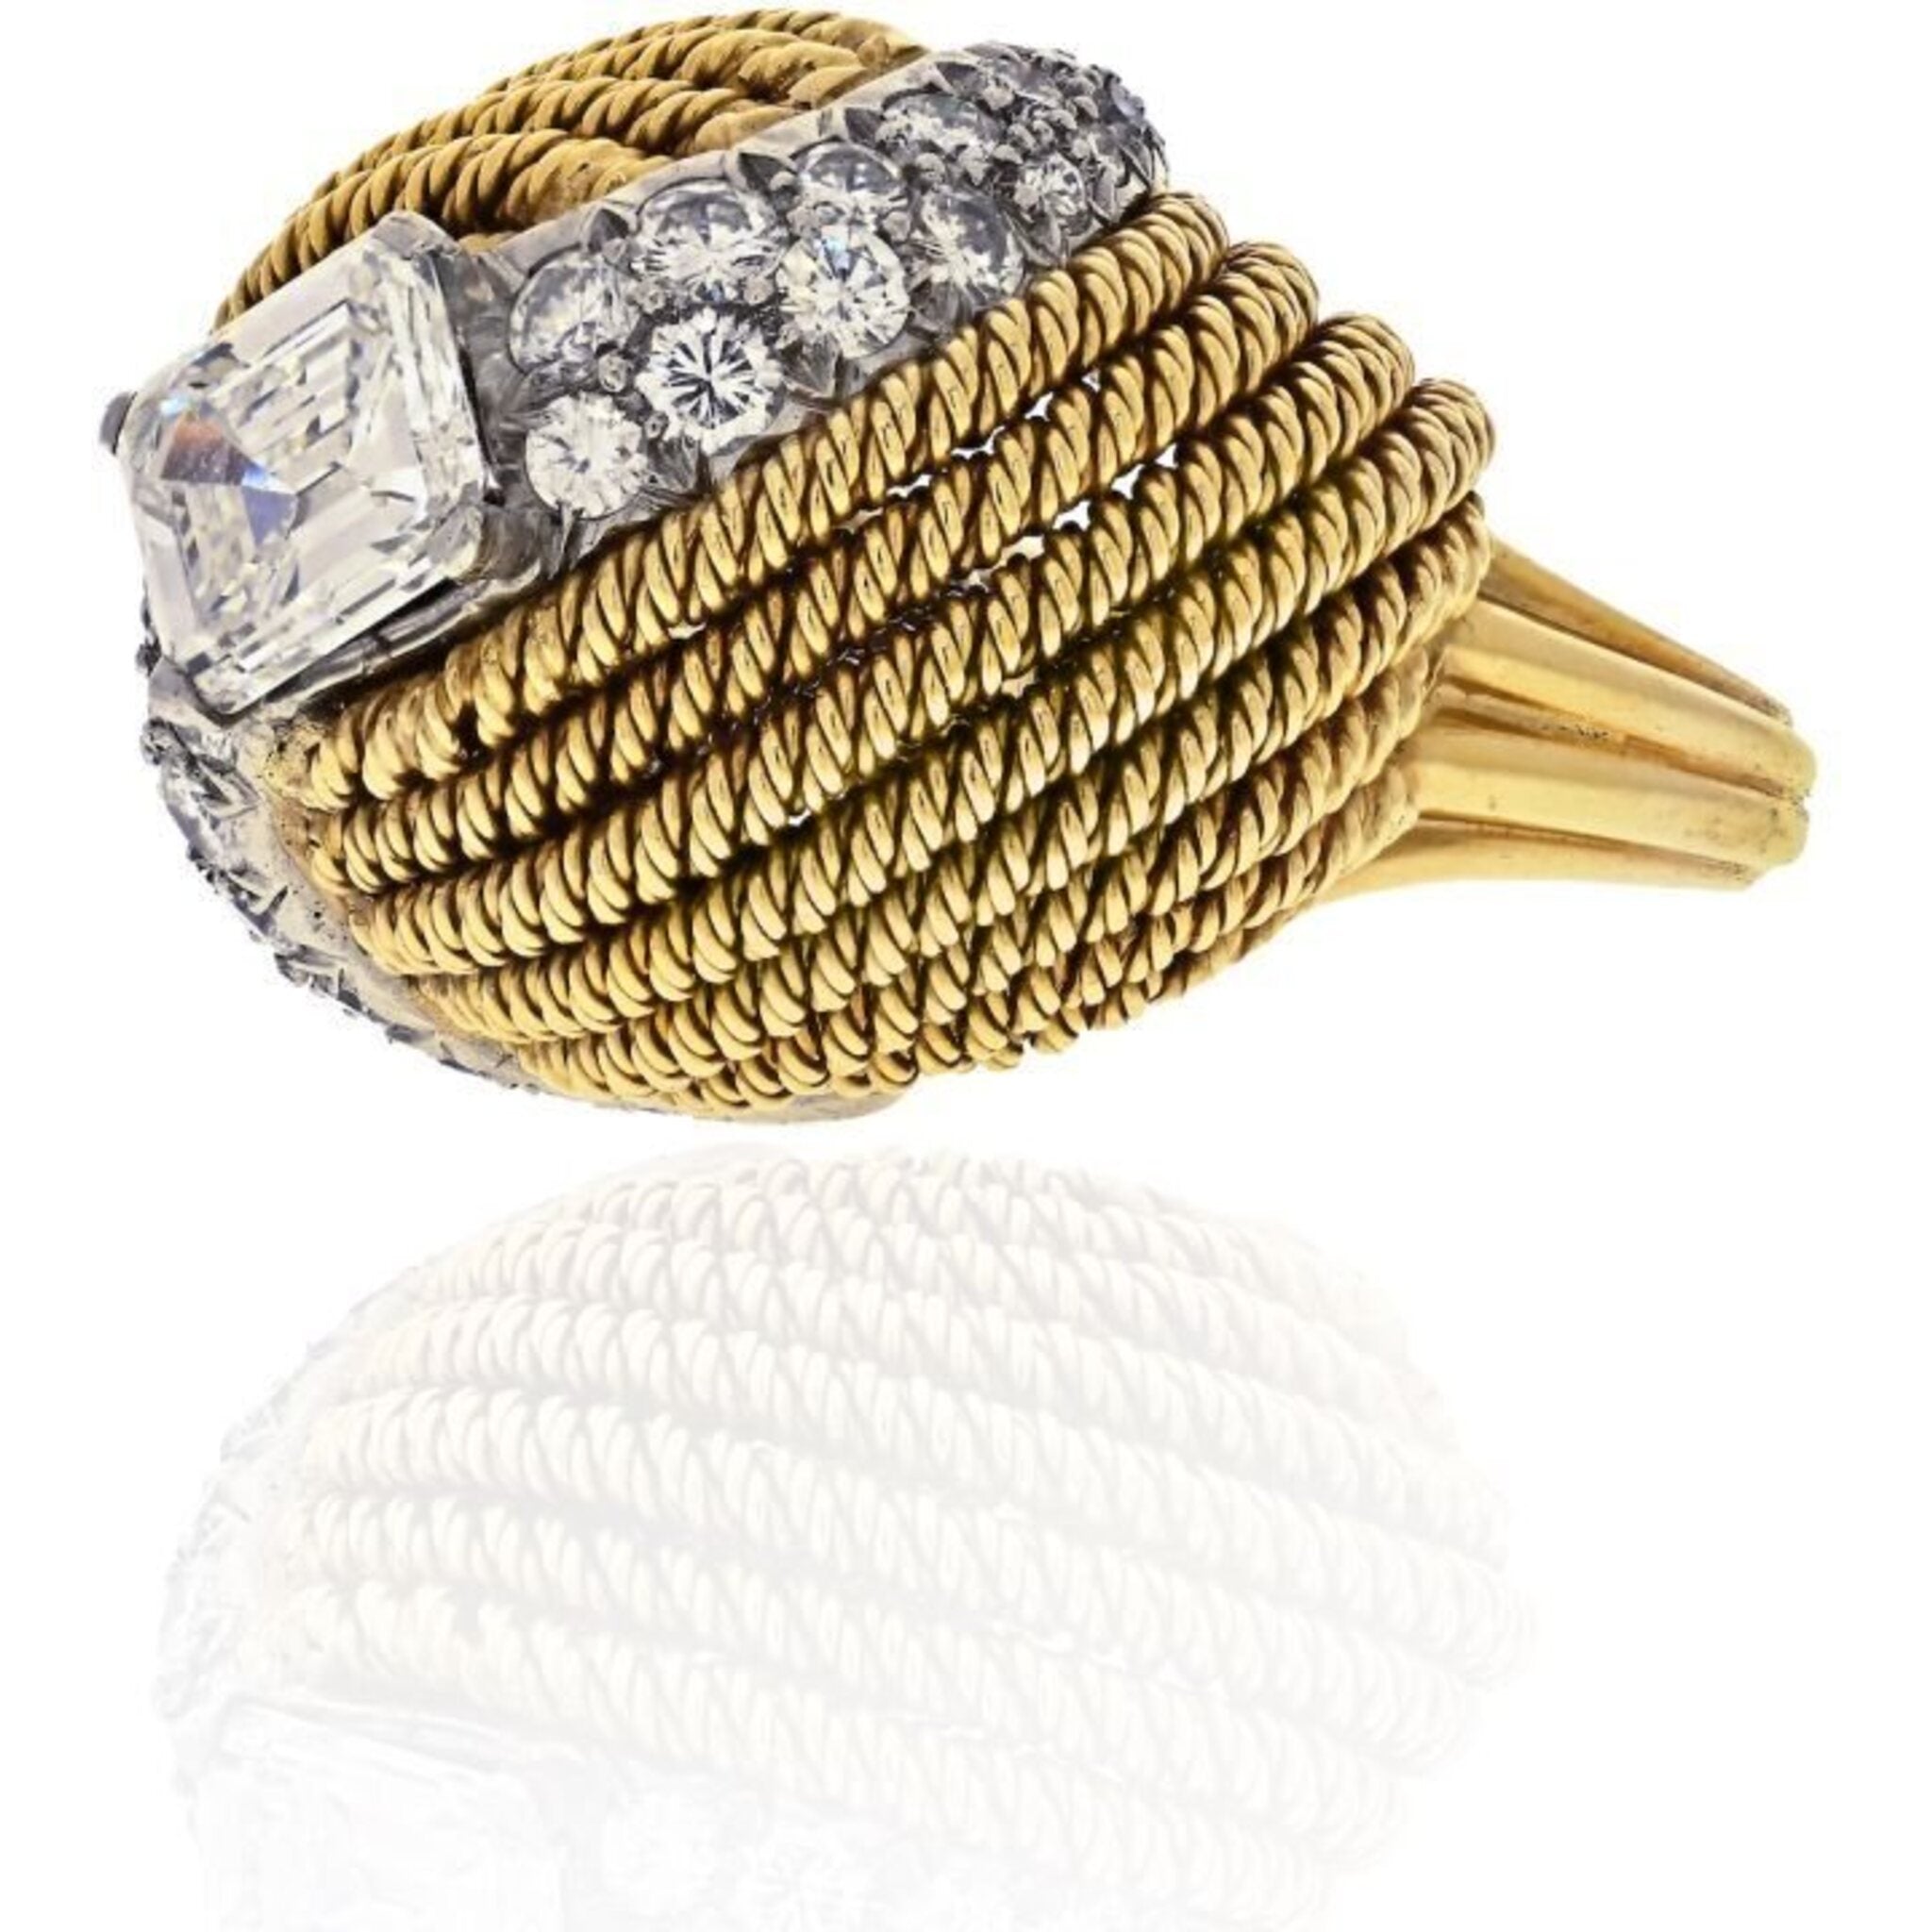 David Webb - Platinum & 18K Yellow Gold 2.13 Carat Emerald Cut Turban Diamond Ring